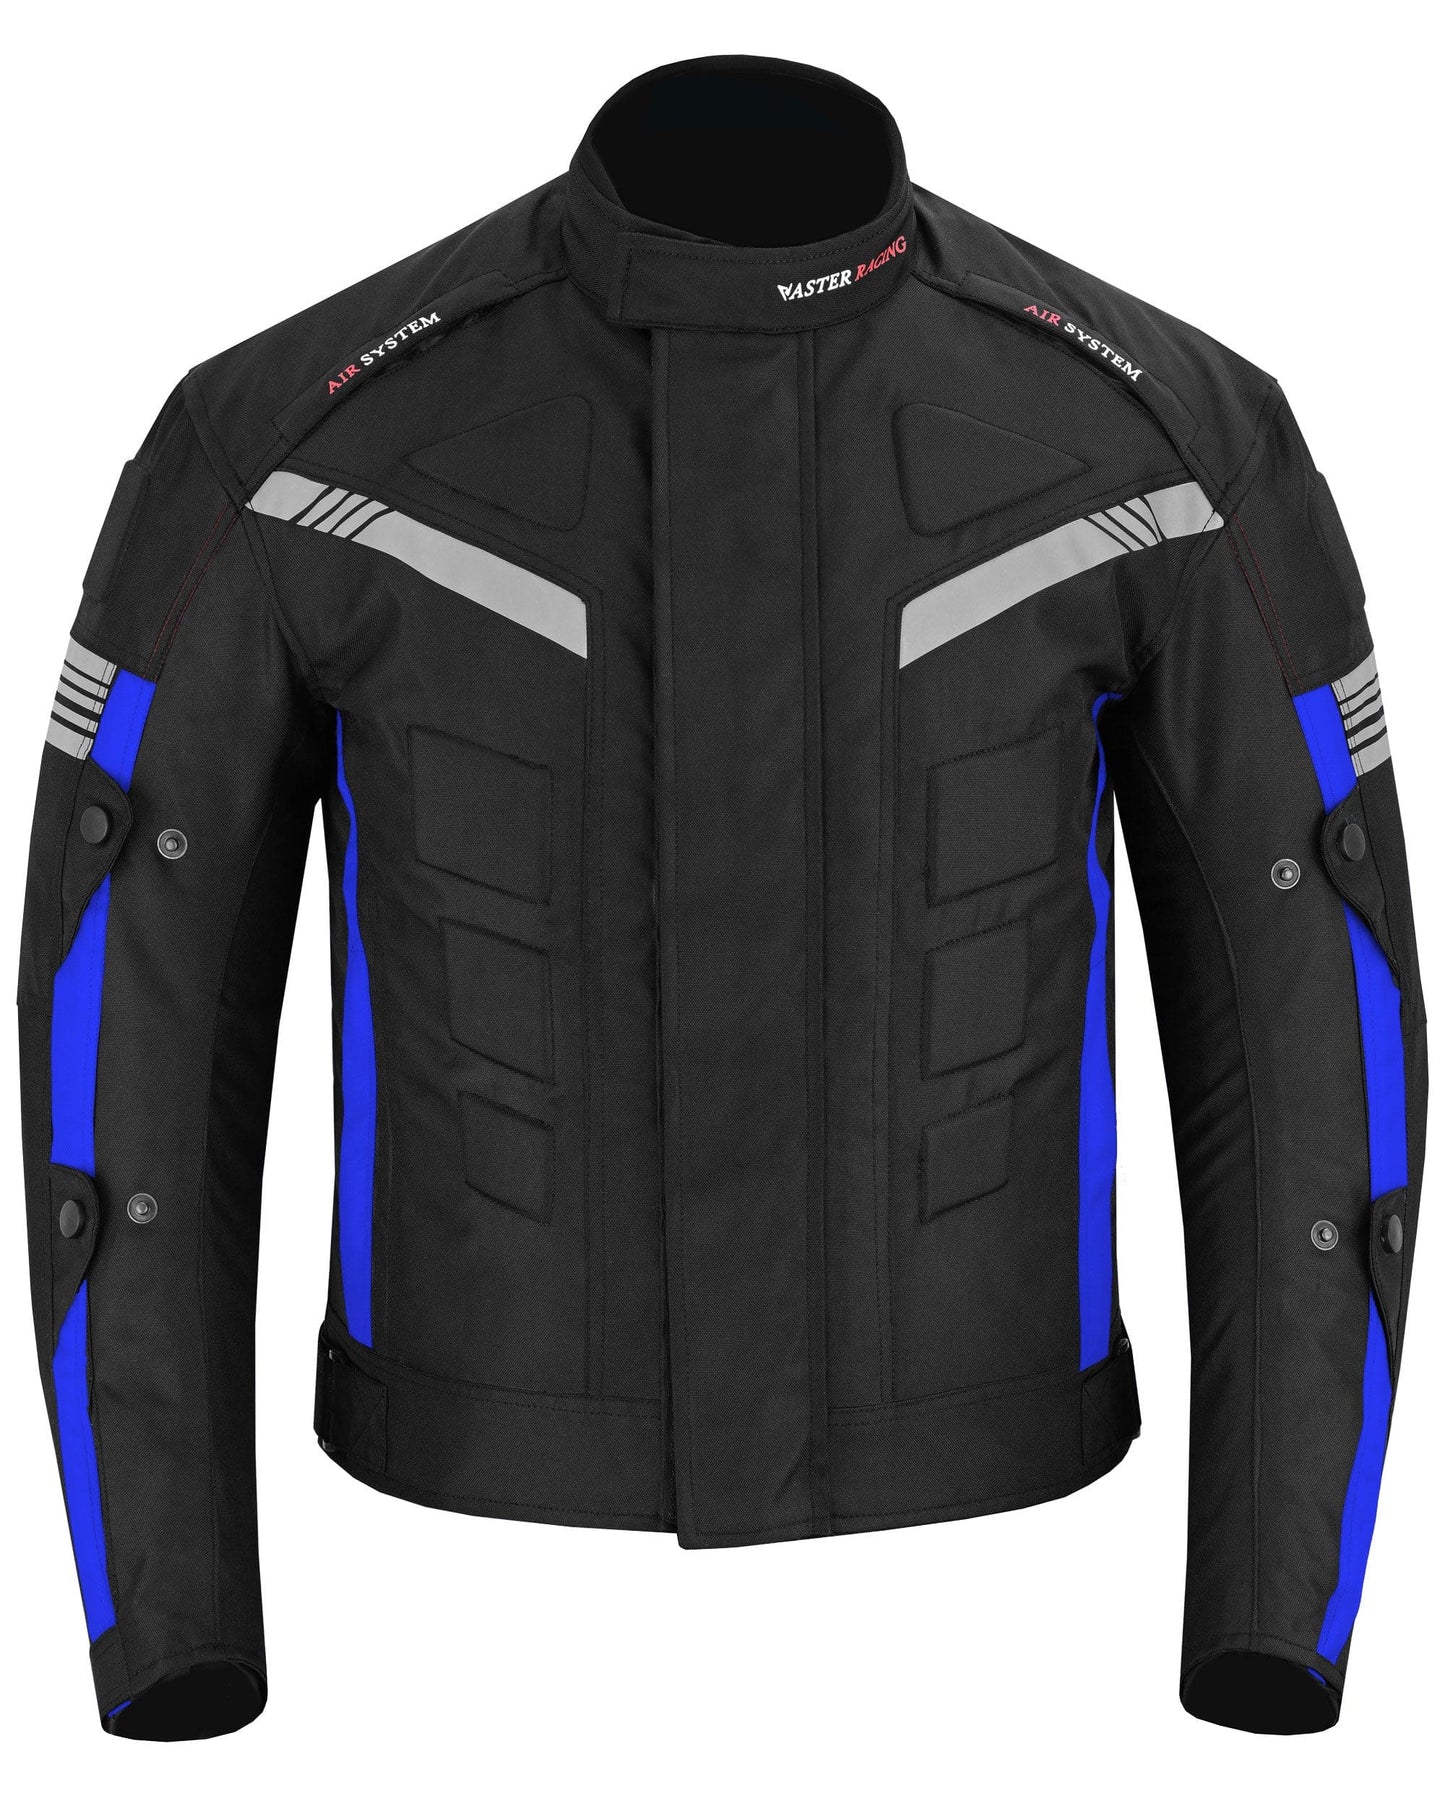 Motorcycle Waterproof Jacket-Blue Black